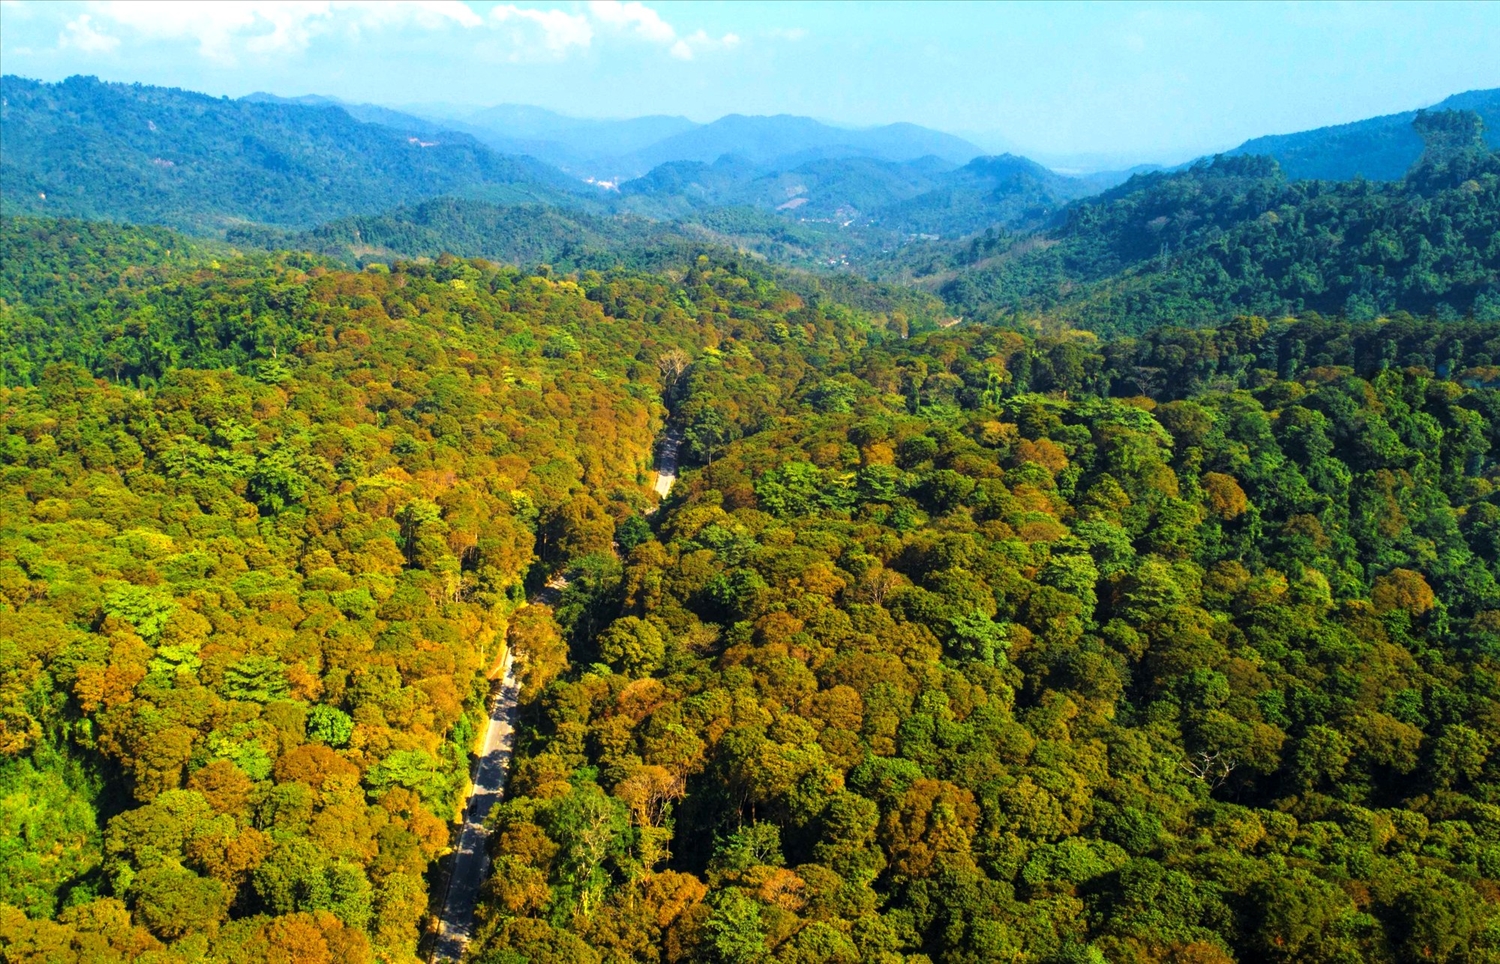 Nhờ được bảo vệ mà rừng săng lẻ ở xã Tam Đình, huyện Tương Dương ngày một xanh tốt